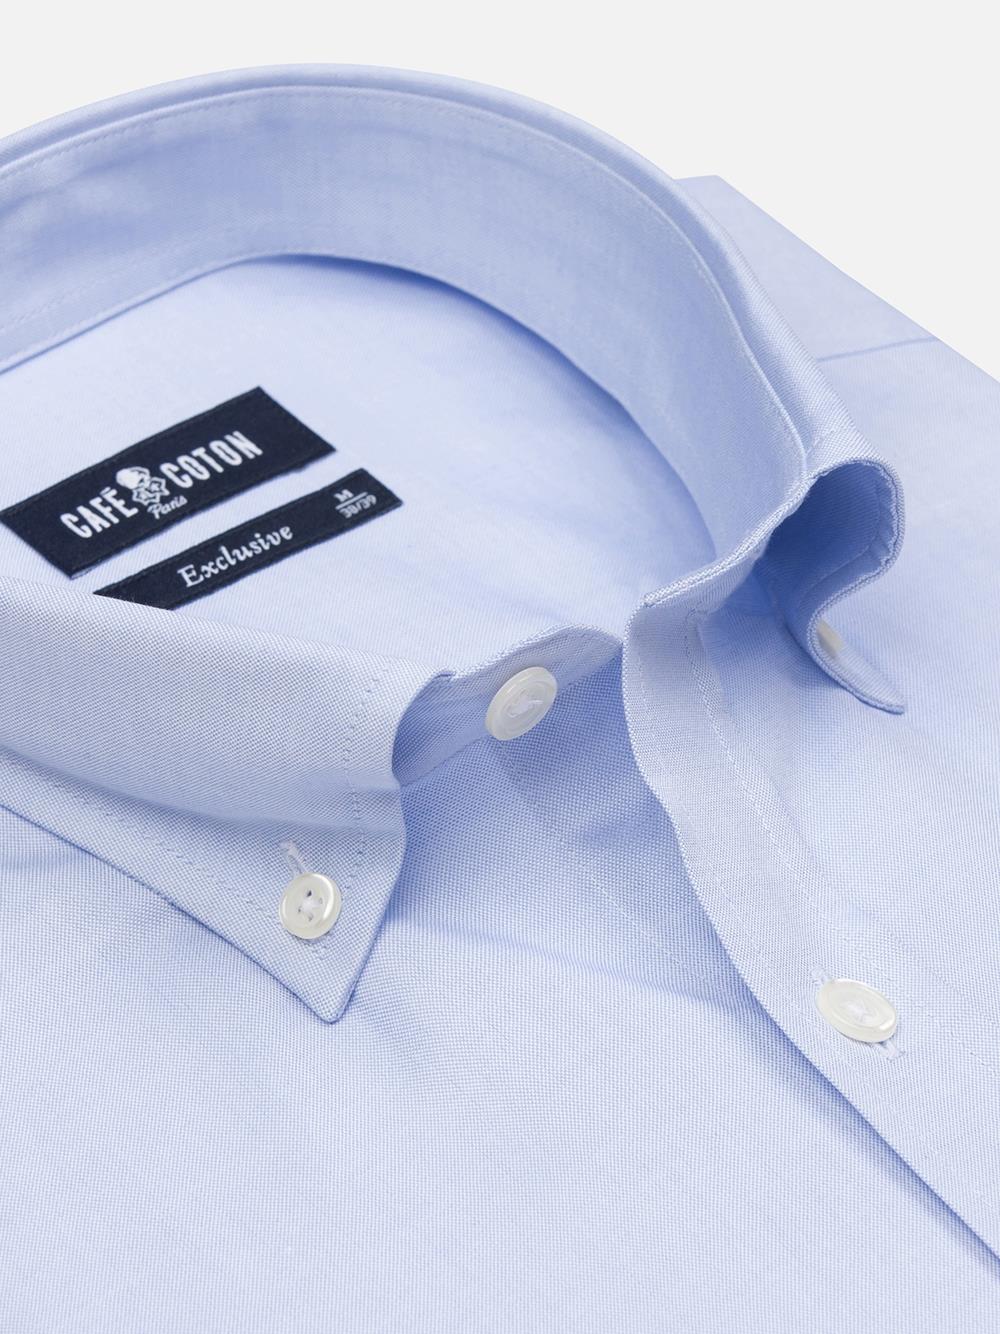 Tailliertes Tailliertes Hemd mit himmelblauen Punkten  - Buttondown Kragen